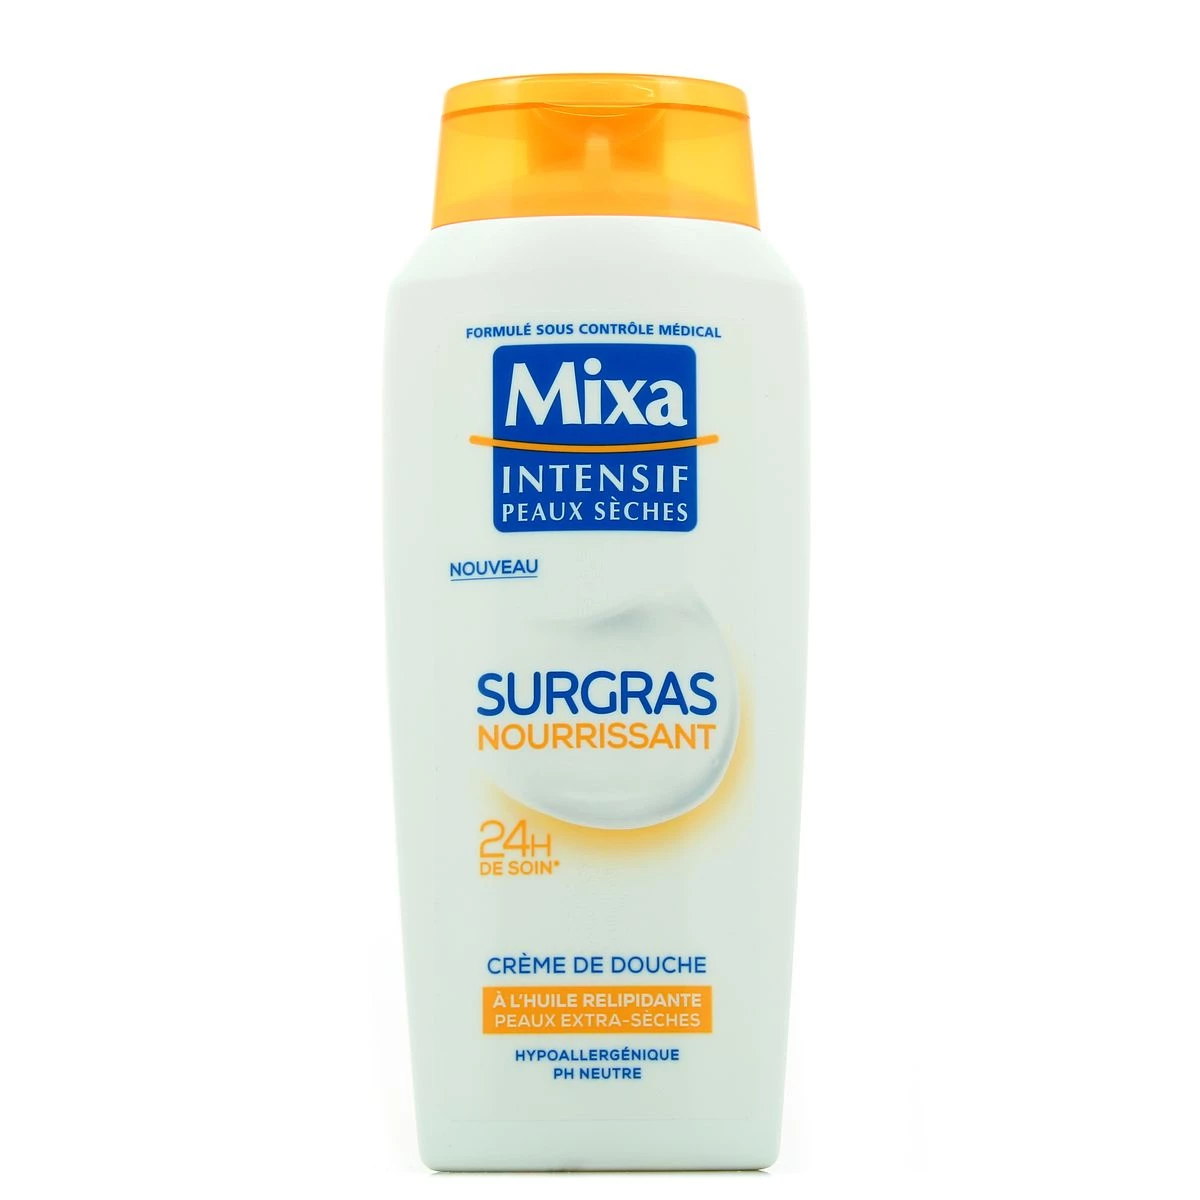 Crème de douche surgras nourrissant peaux extra-sèches 250ml - MIXA